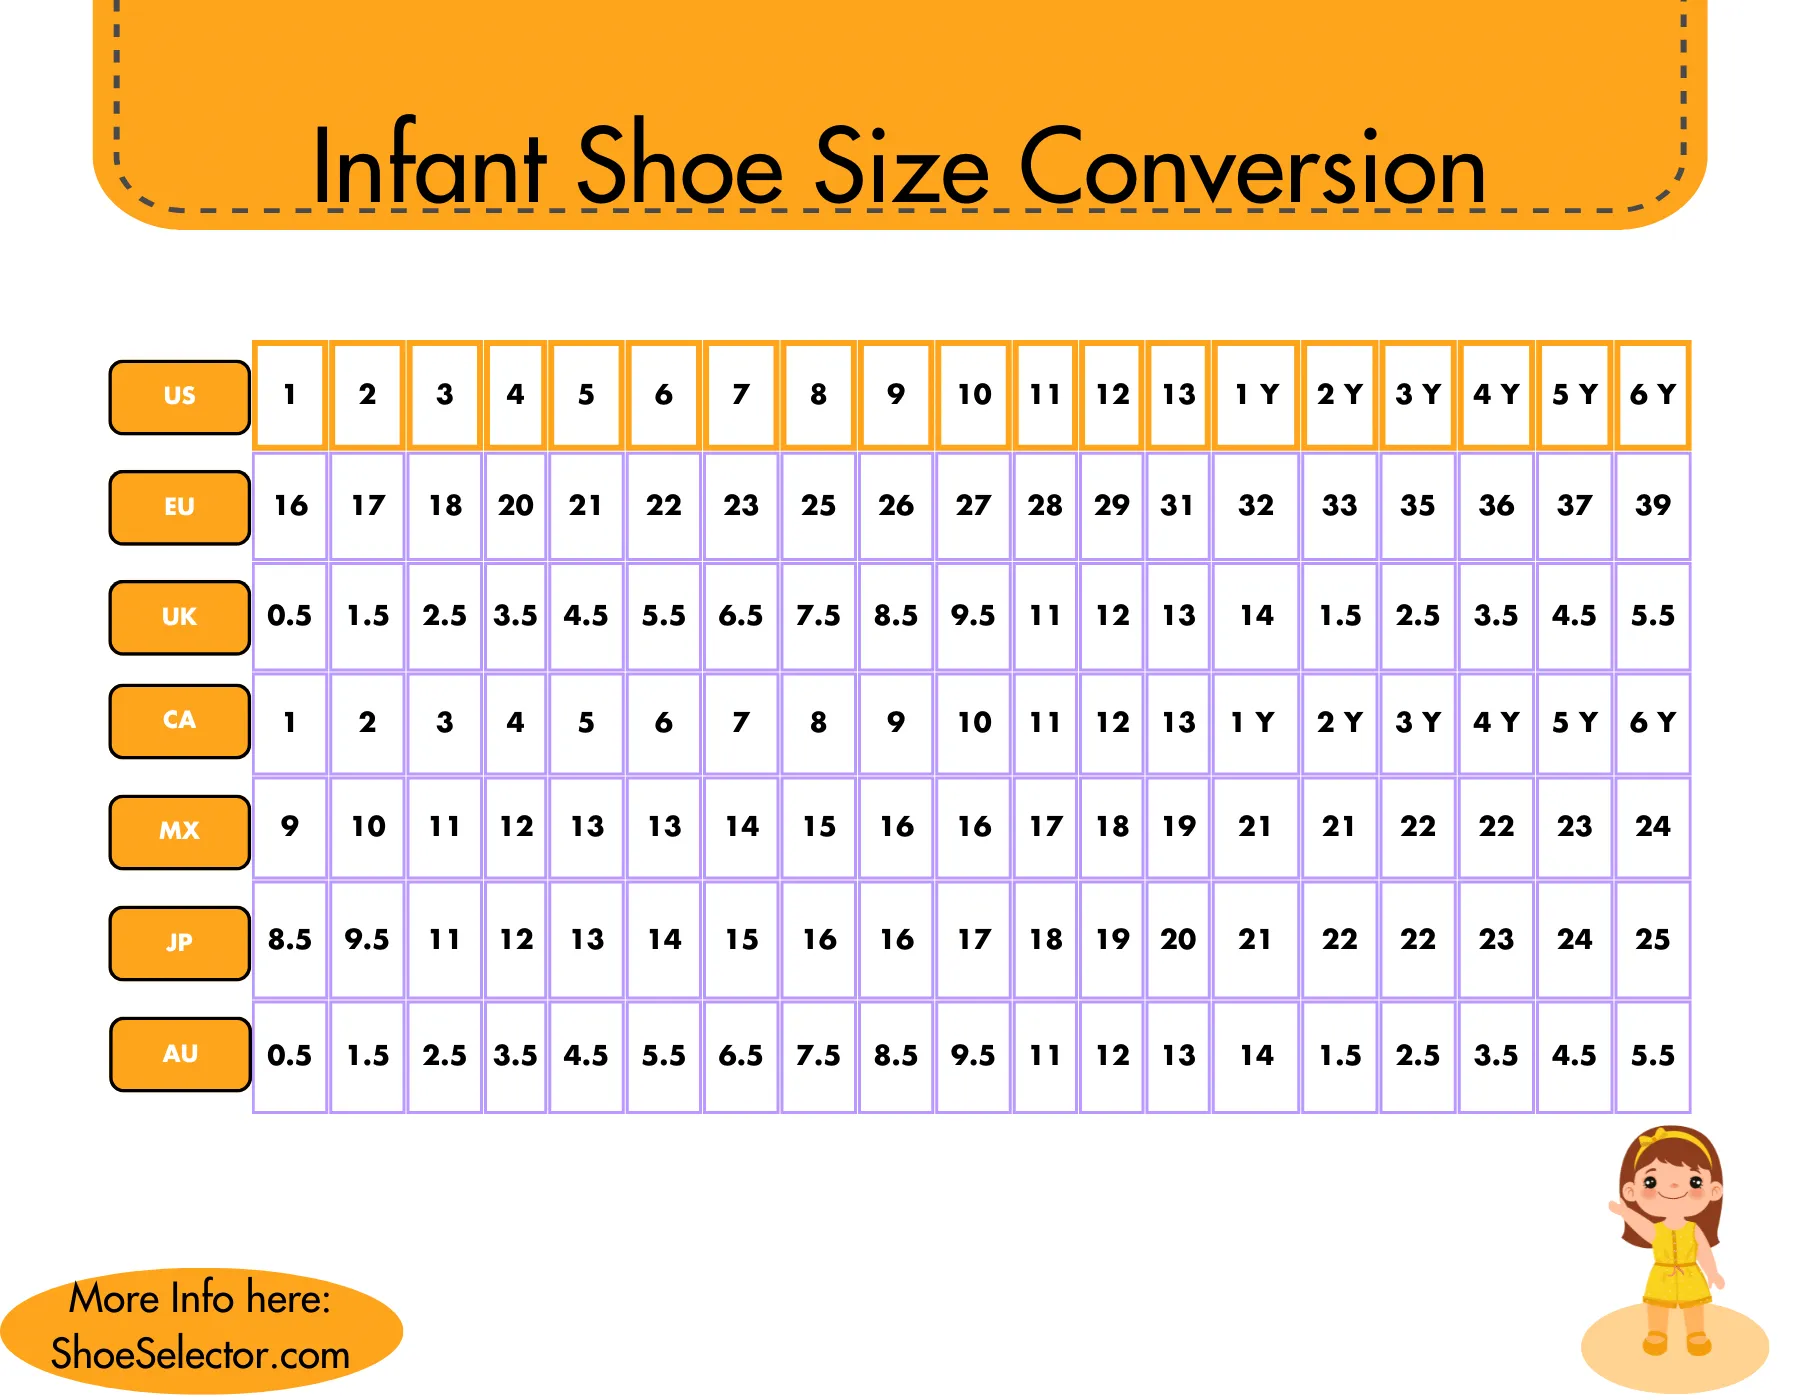 Infant shoe size conversion